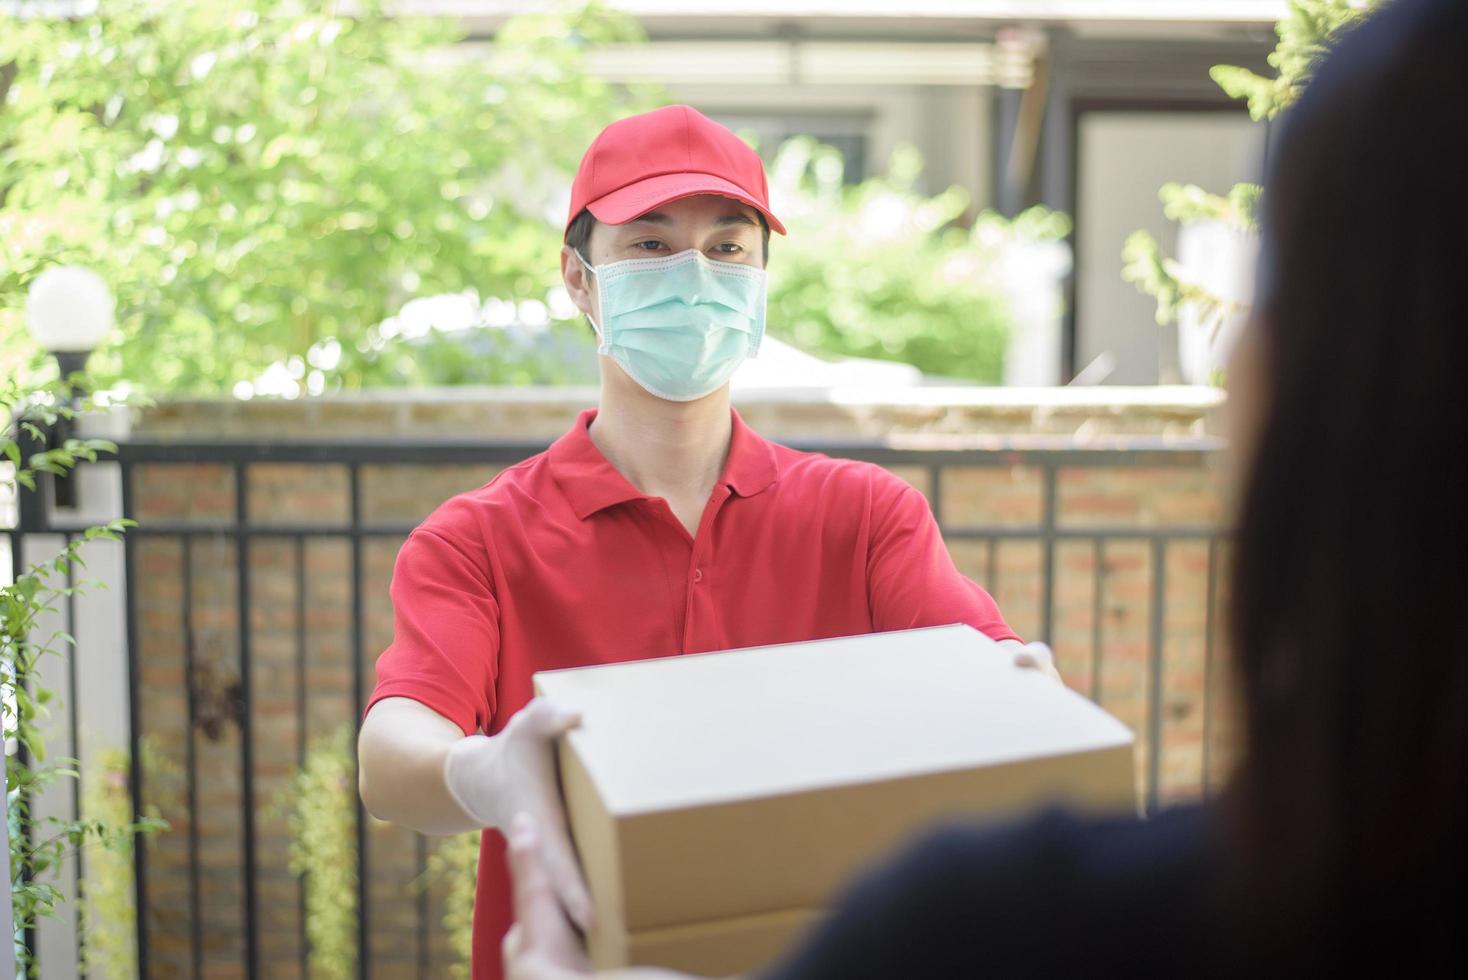 el mensajero con máscara protectora y guantes entrega alimentos en caja durante el brote de virus. entrega segura a domicilio. foto